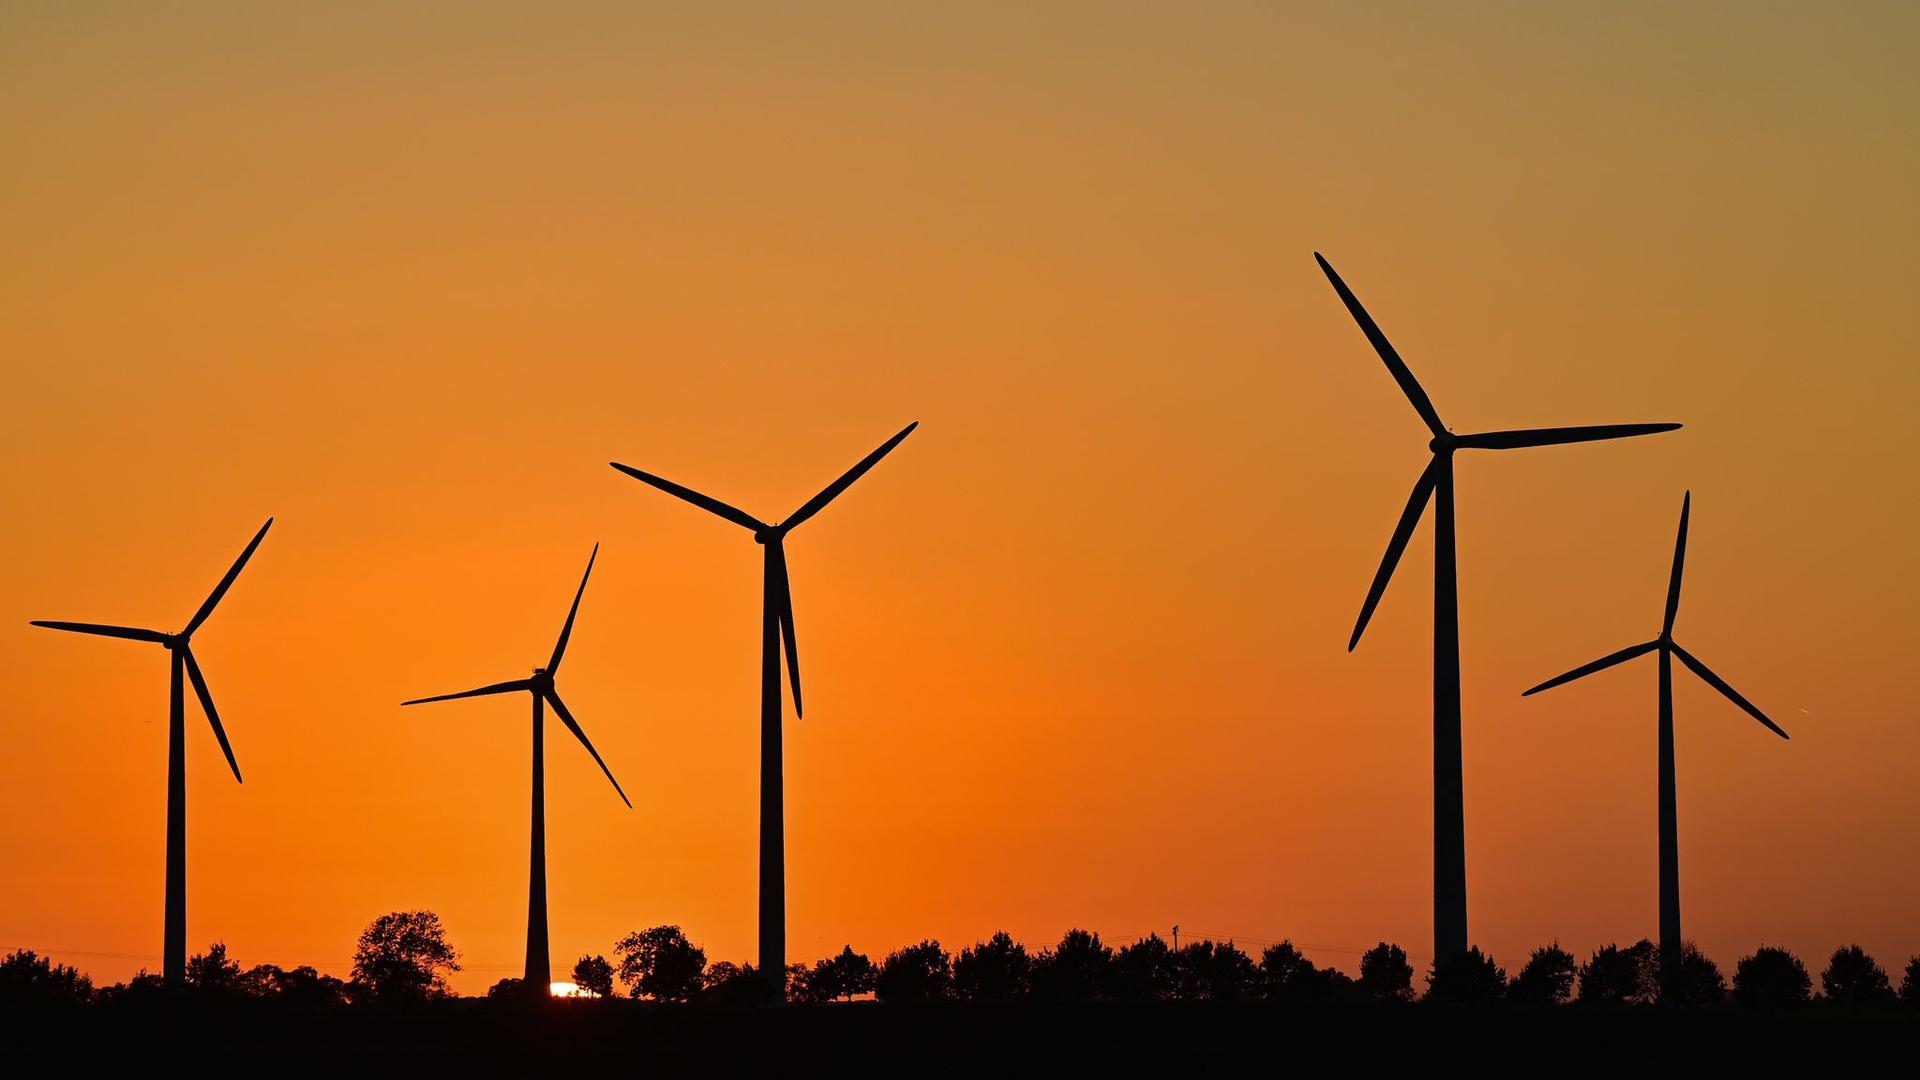 ARCHIV - Immer mehr neue Windenergieanlagen gehen in Betrieb. Foto: Patrick Pleul/dpa-Zentralbild/ZB